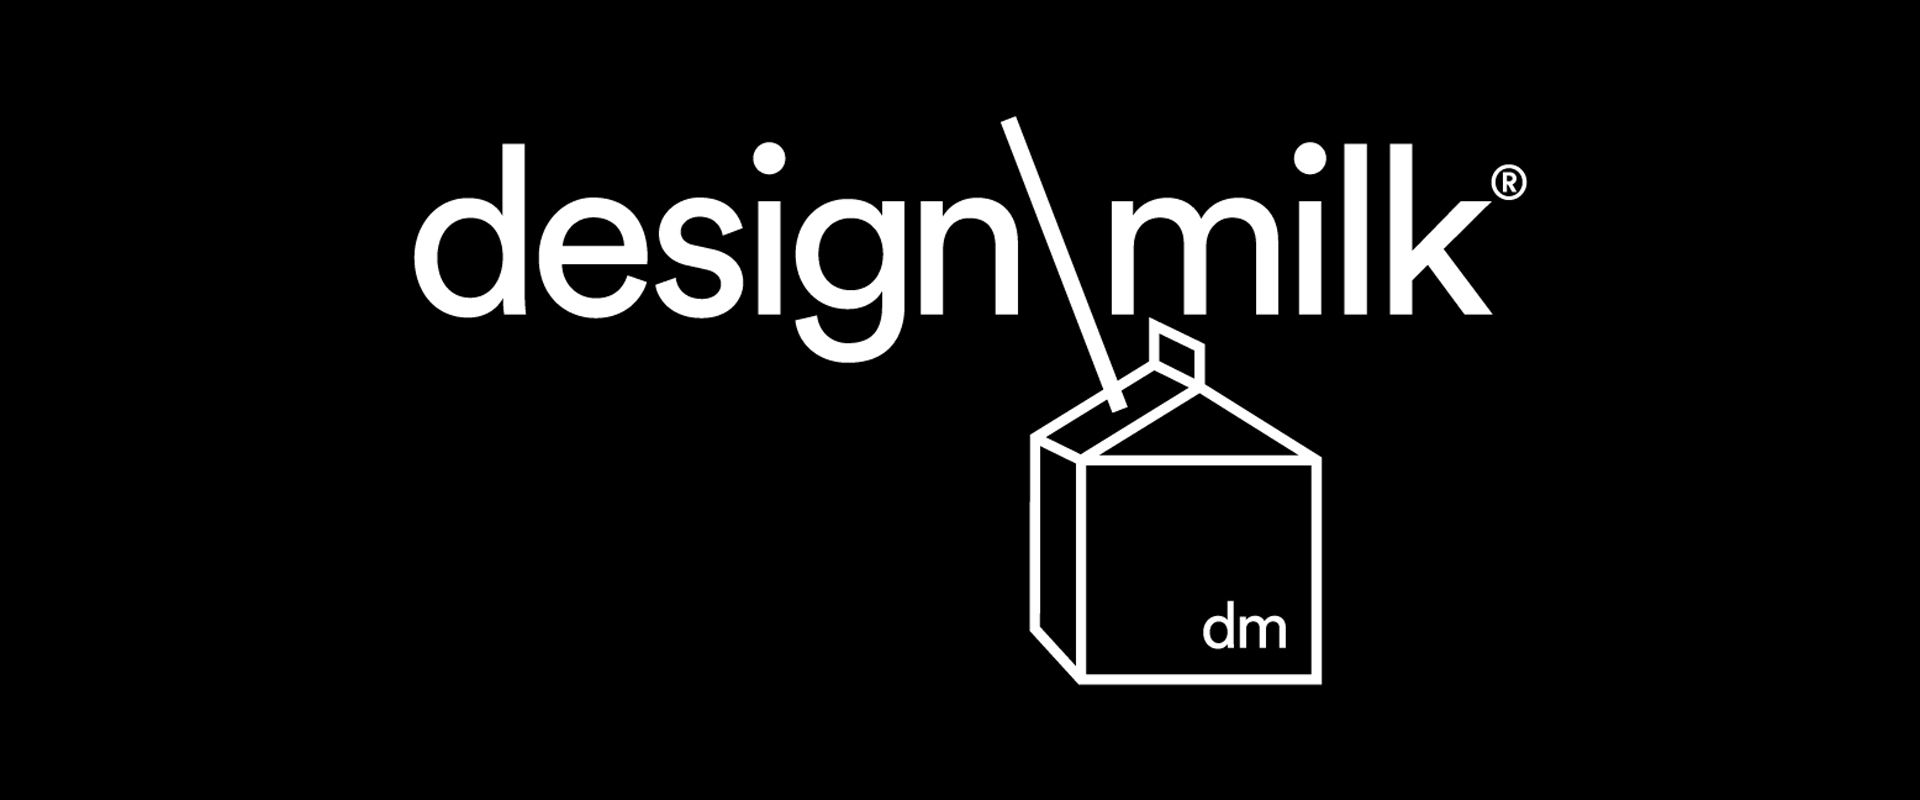 designmilk